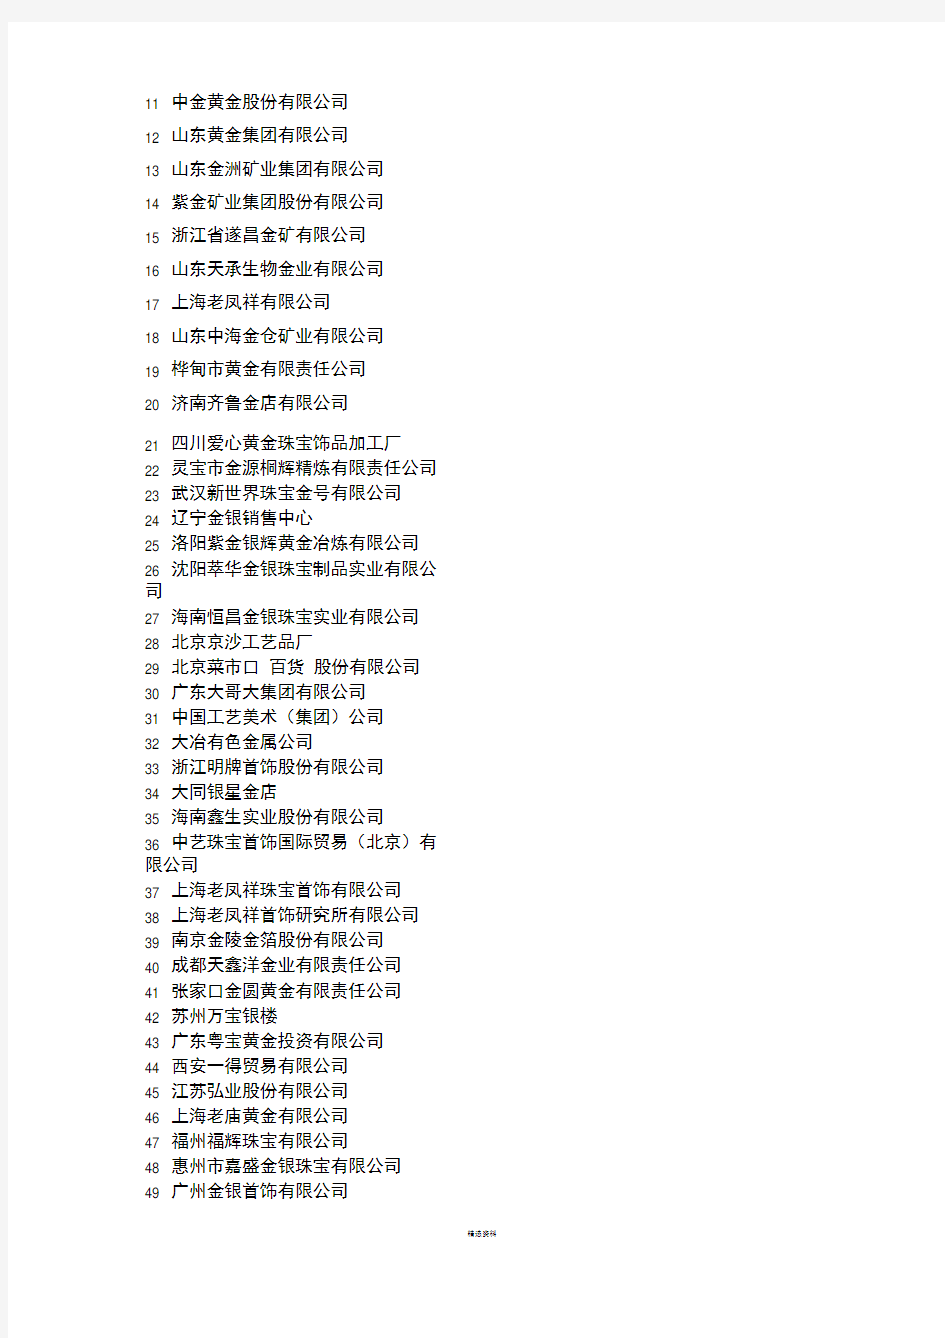 上海黄金交易所会员单位名单